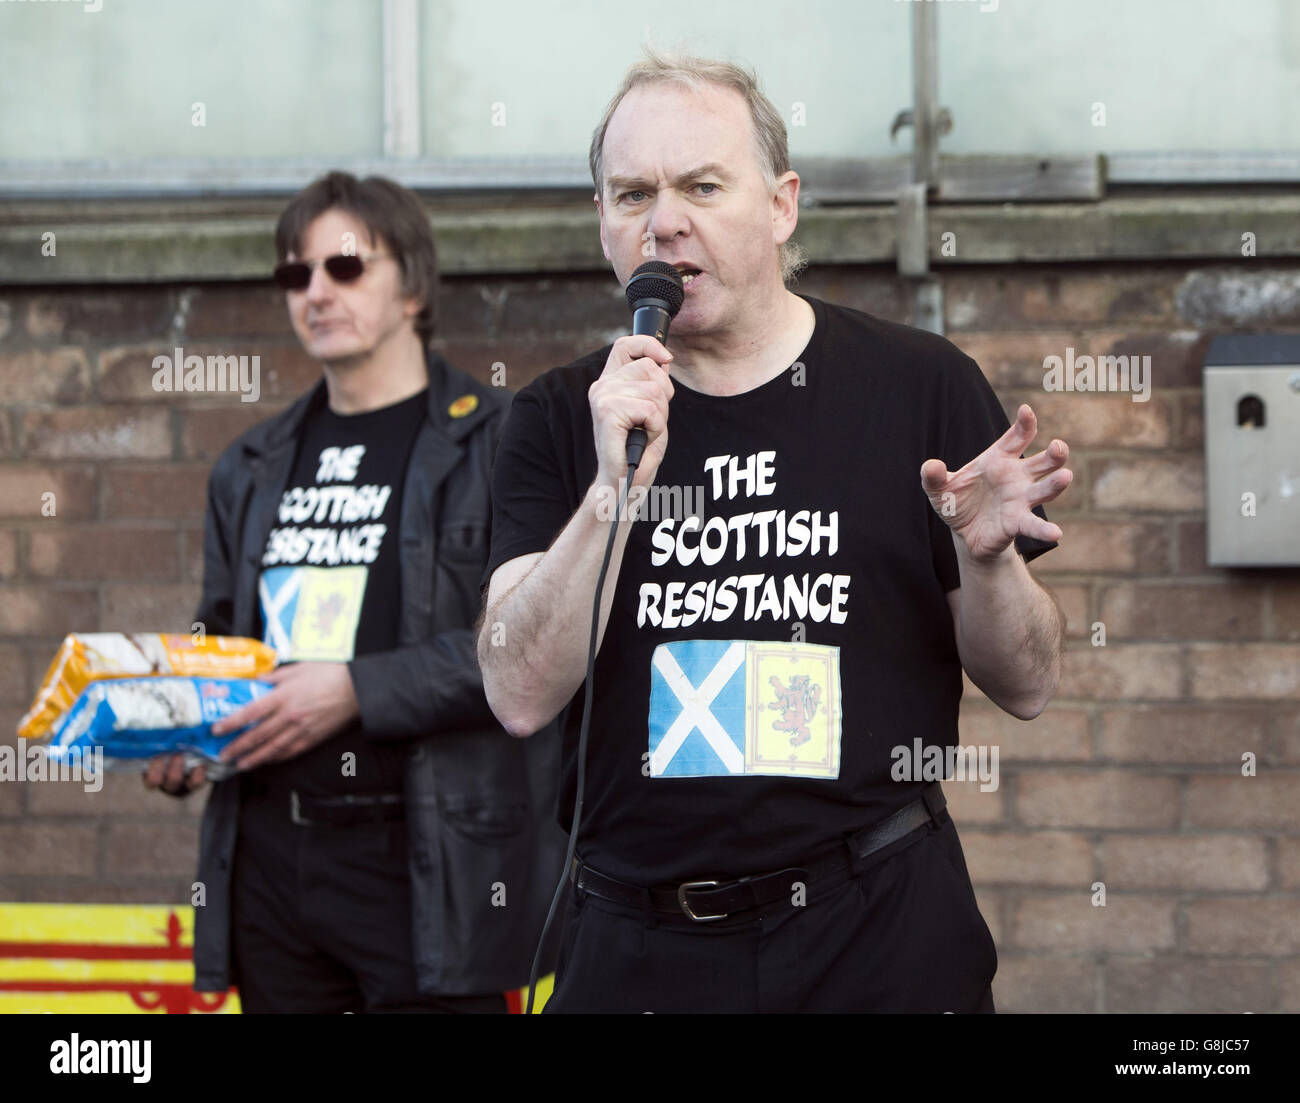 Gli attivisti Sean Clerkin (a destra) e James Scott del gruppo di resistenza scozzese prendono parte a una protesta fuori dalla fabbrica di TUNNock a Uddingston, Lanarkshire, una settimana dopo che l'azienda pubblicizzò il suo biscotto più venduto come la Great British Tea Cake. Foto Stock